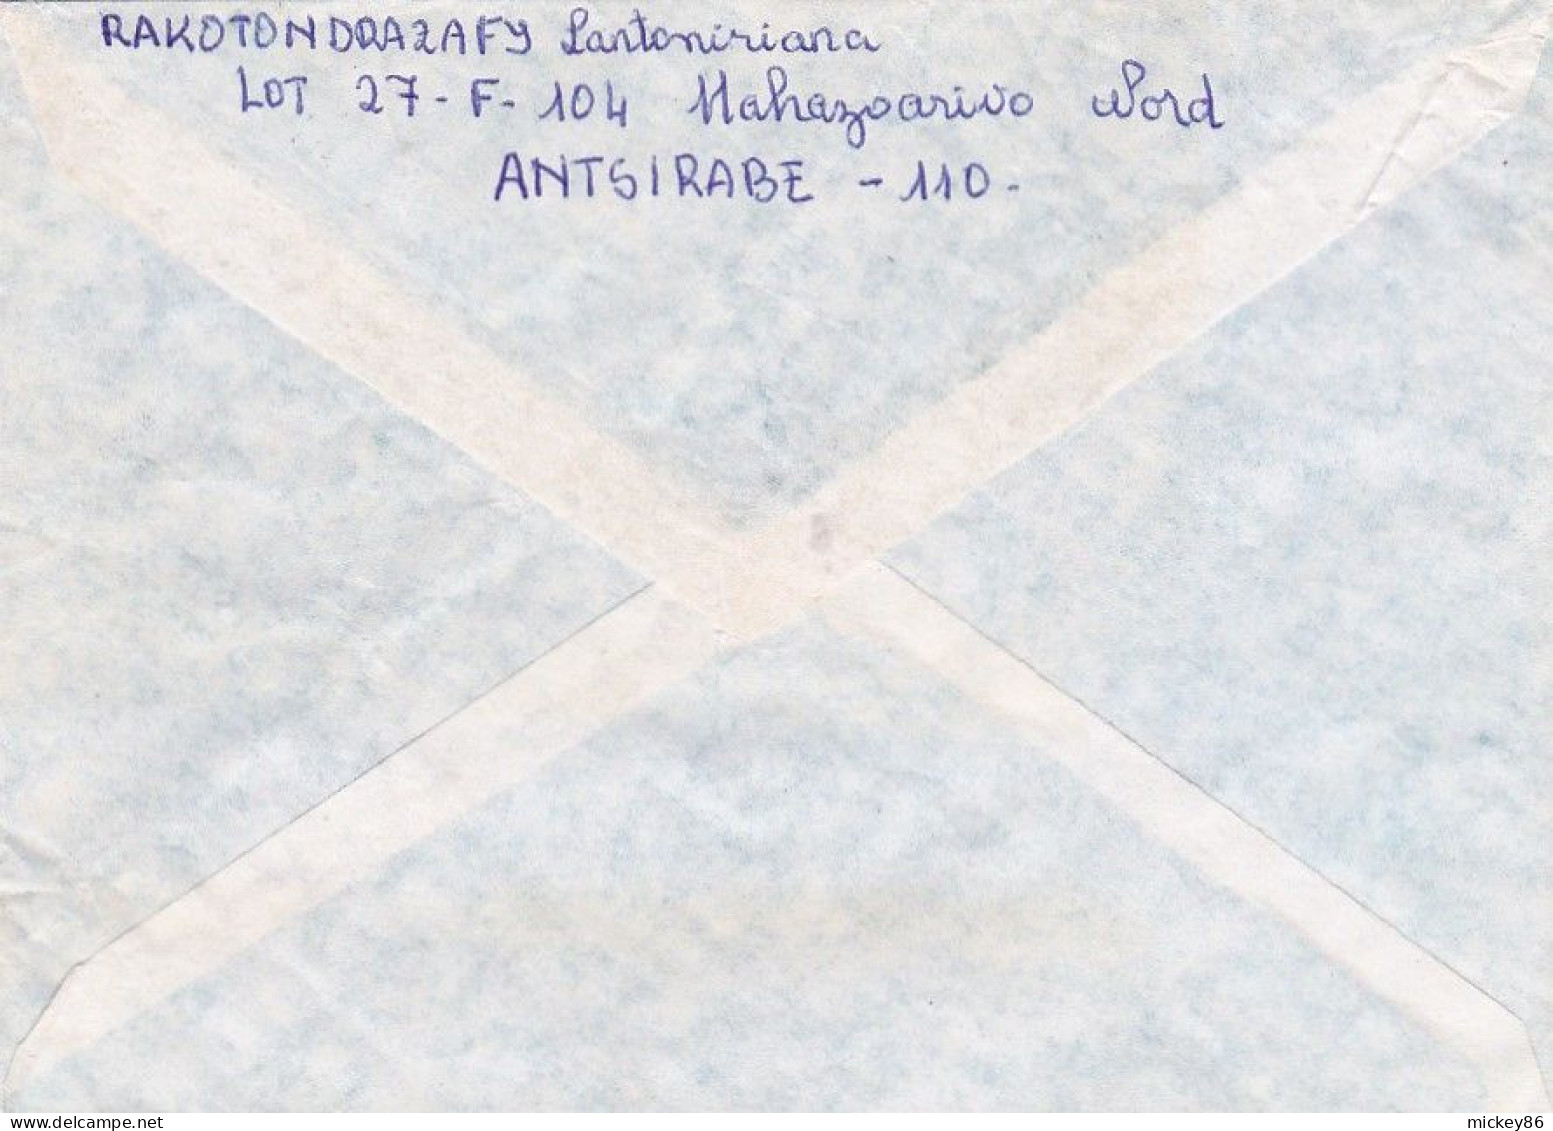 MADAGASCAR--1994- Lettre De ANTSIRABE à TANANARIVE ...timbre ( Pêche )  Seul Sur Lettre - Madagaskar (1960-...)